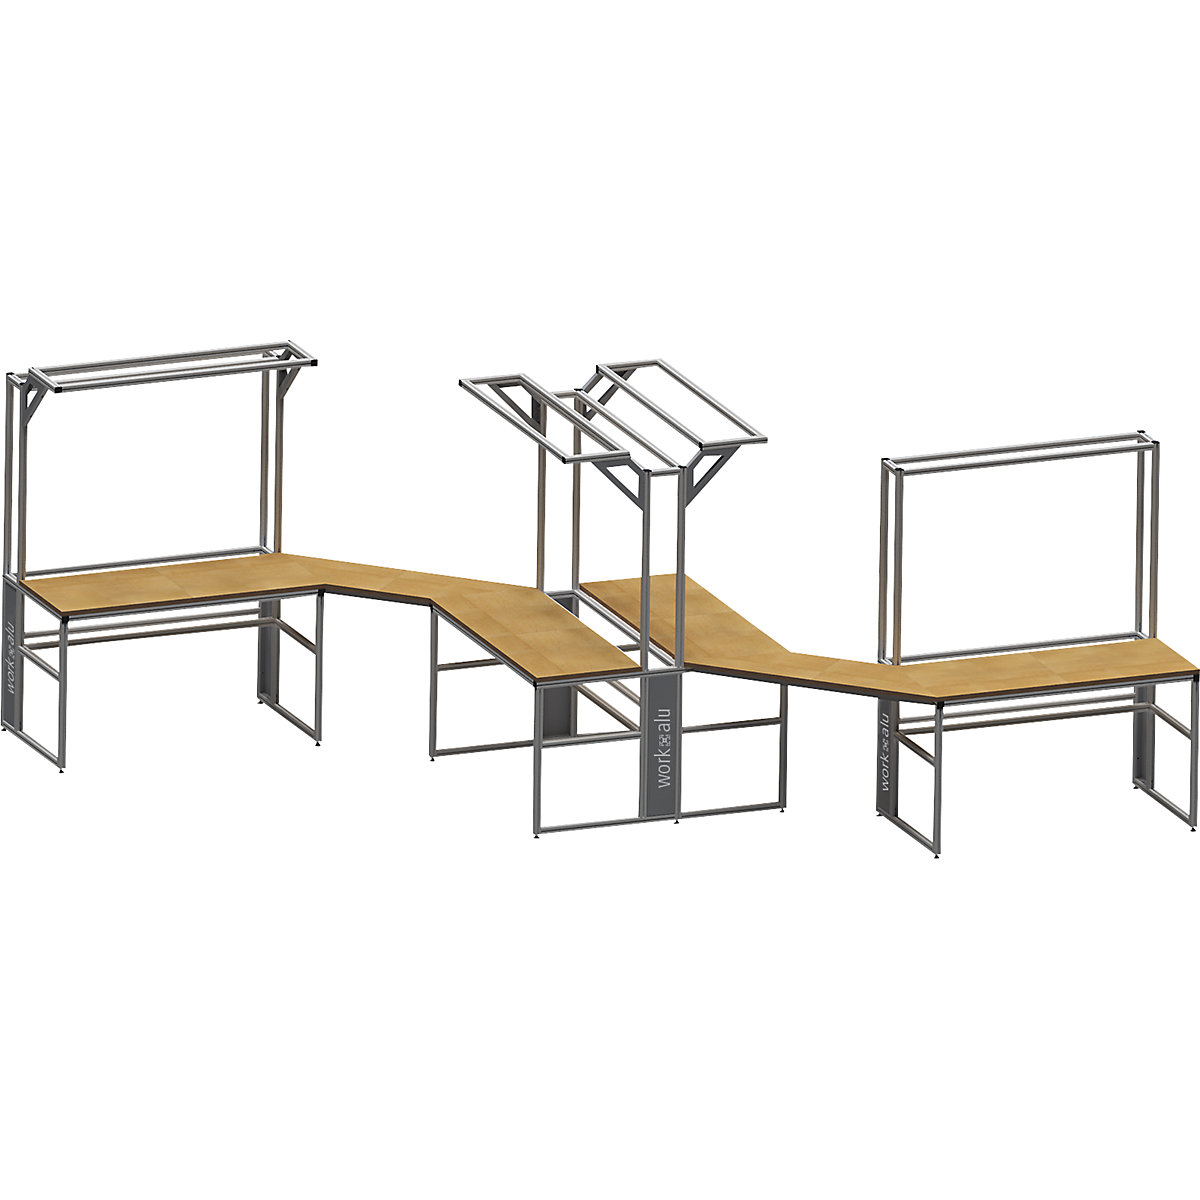 Stół warsztatowy aluminiowy workalu® z modułem systemowym, dwustronny – bedrunka hirth (Zdjęcie produktu 2)-1